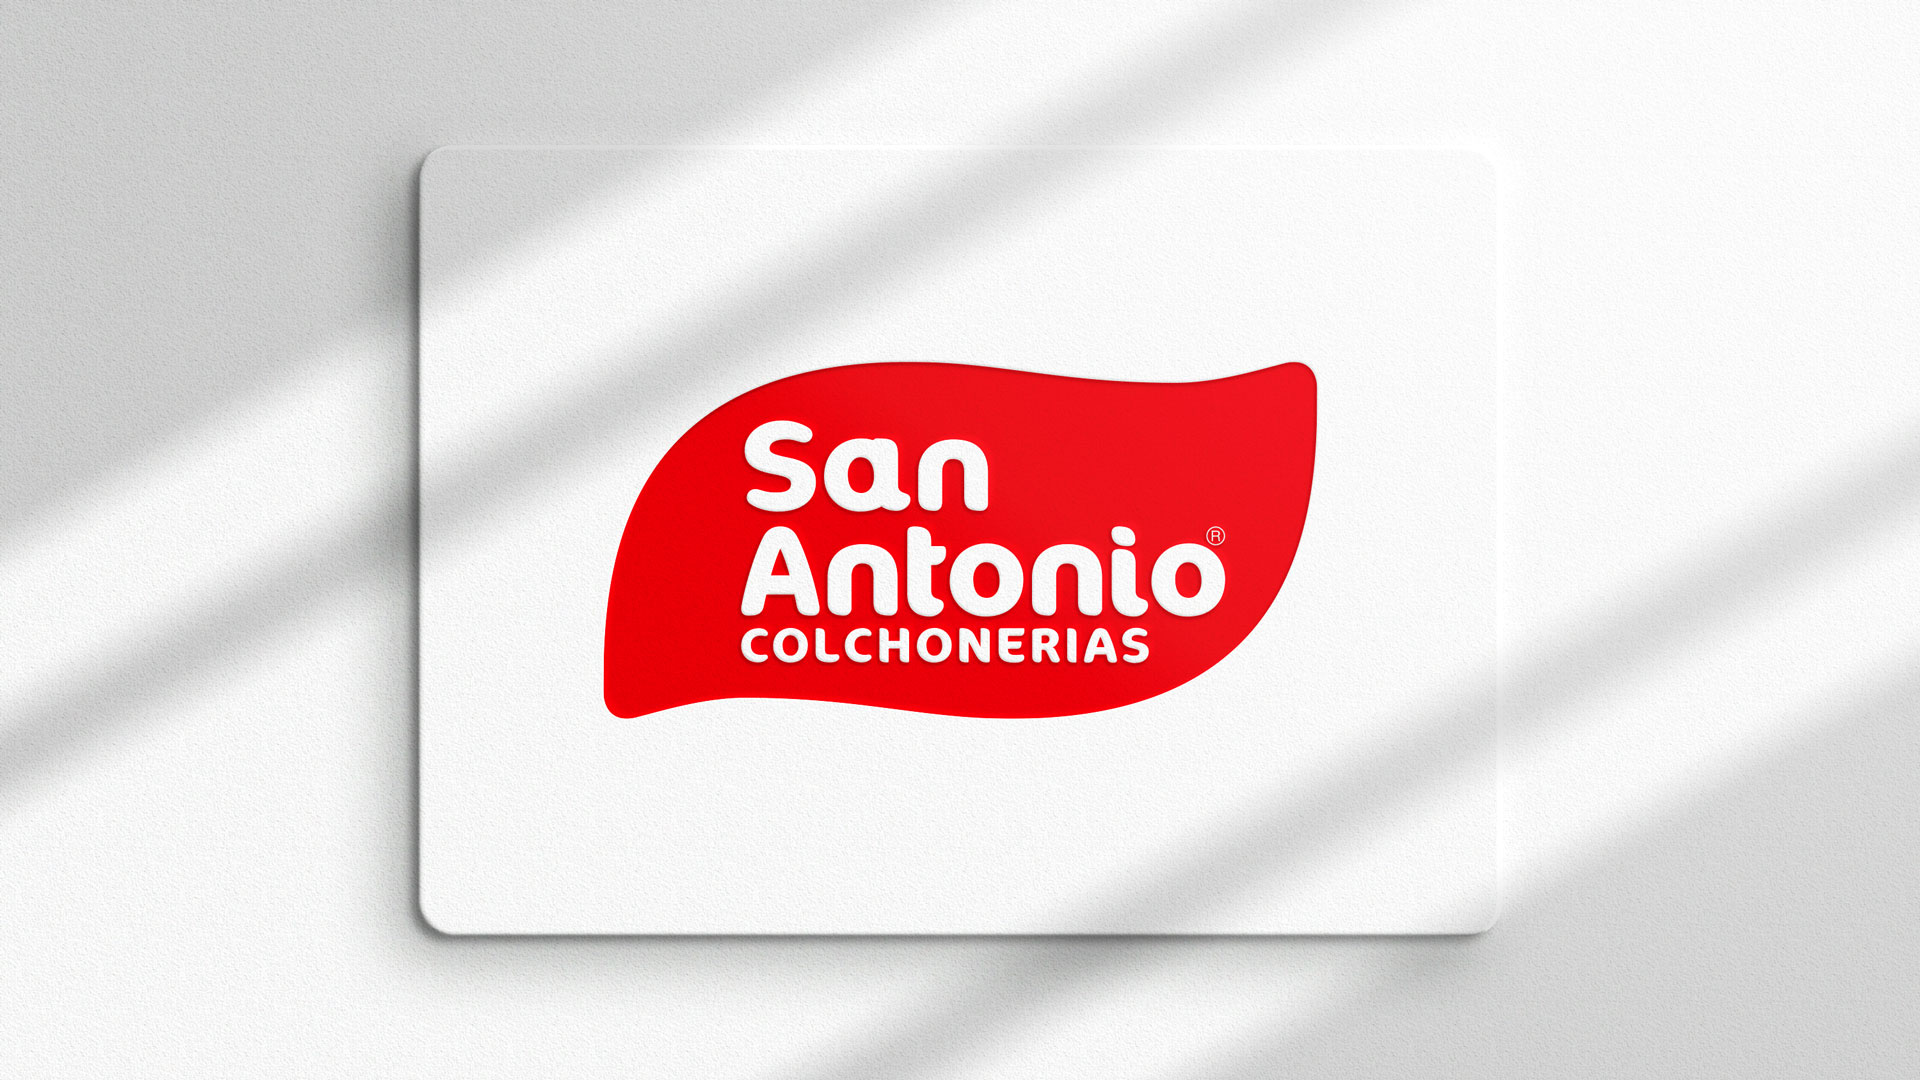 Colchonerías San Antonio